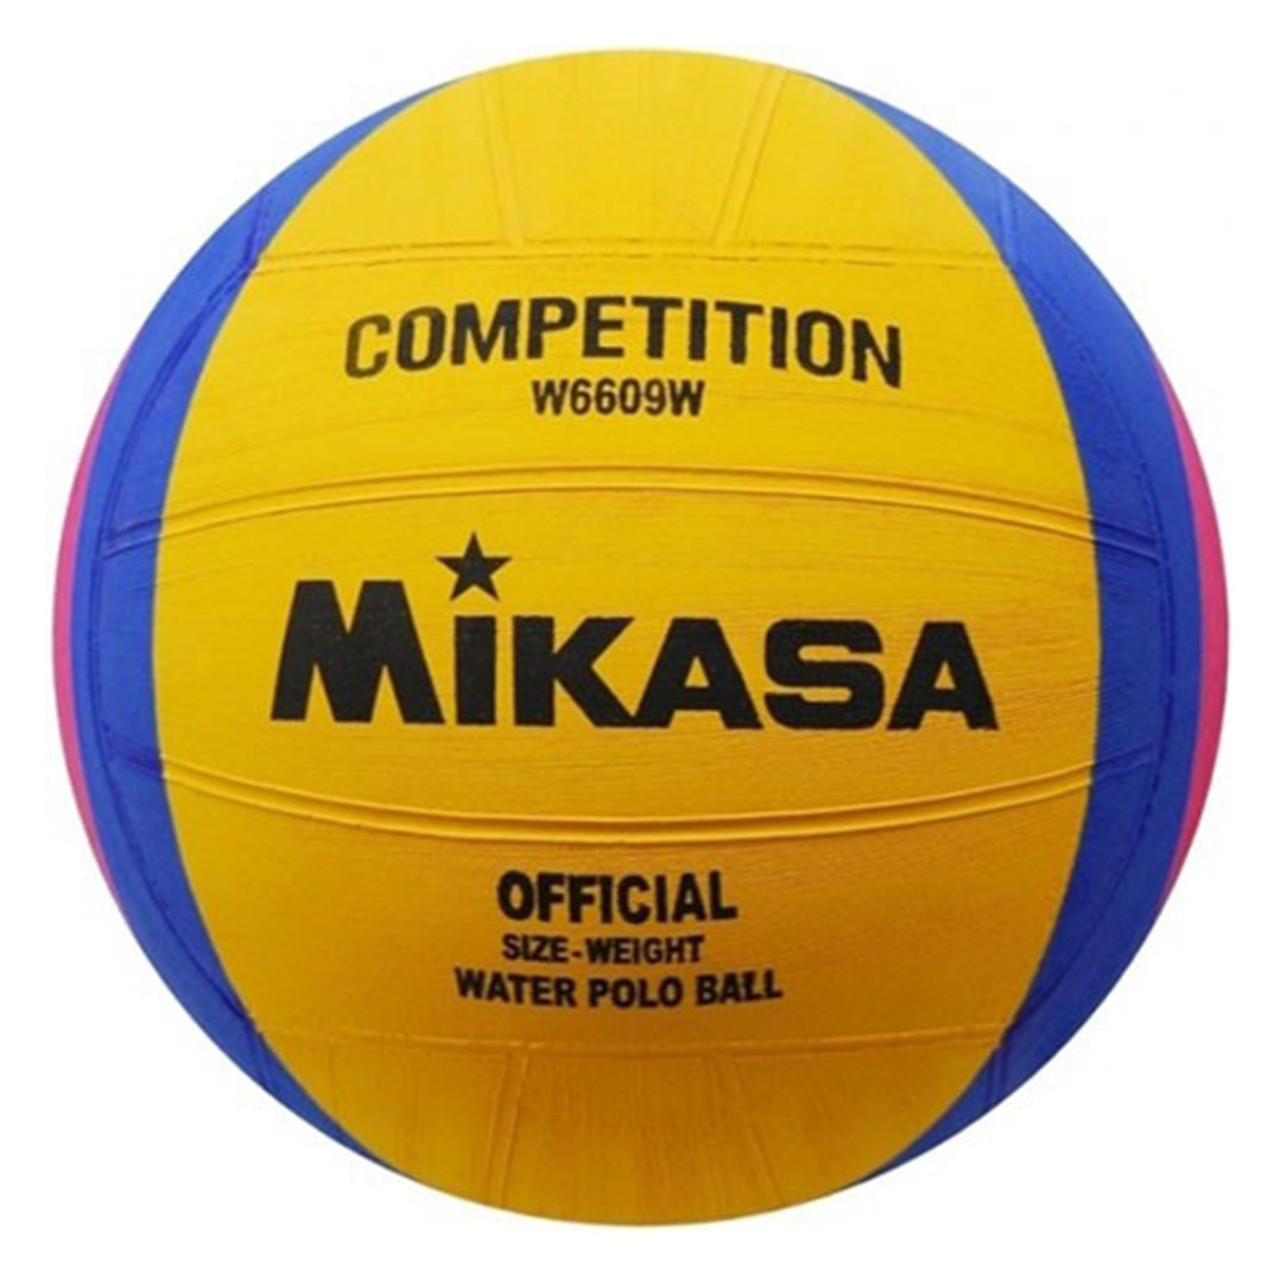 Мяч для водного поло Mikasa W6609w